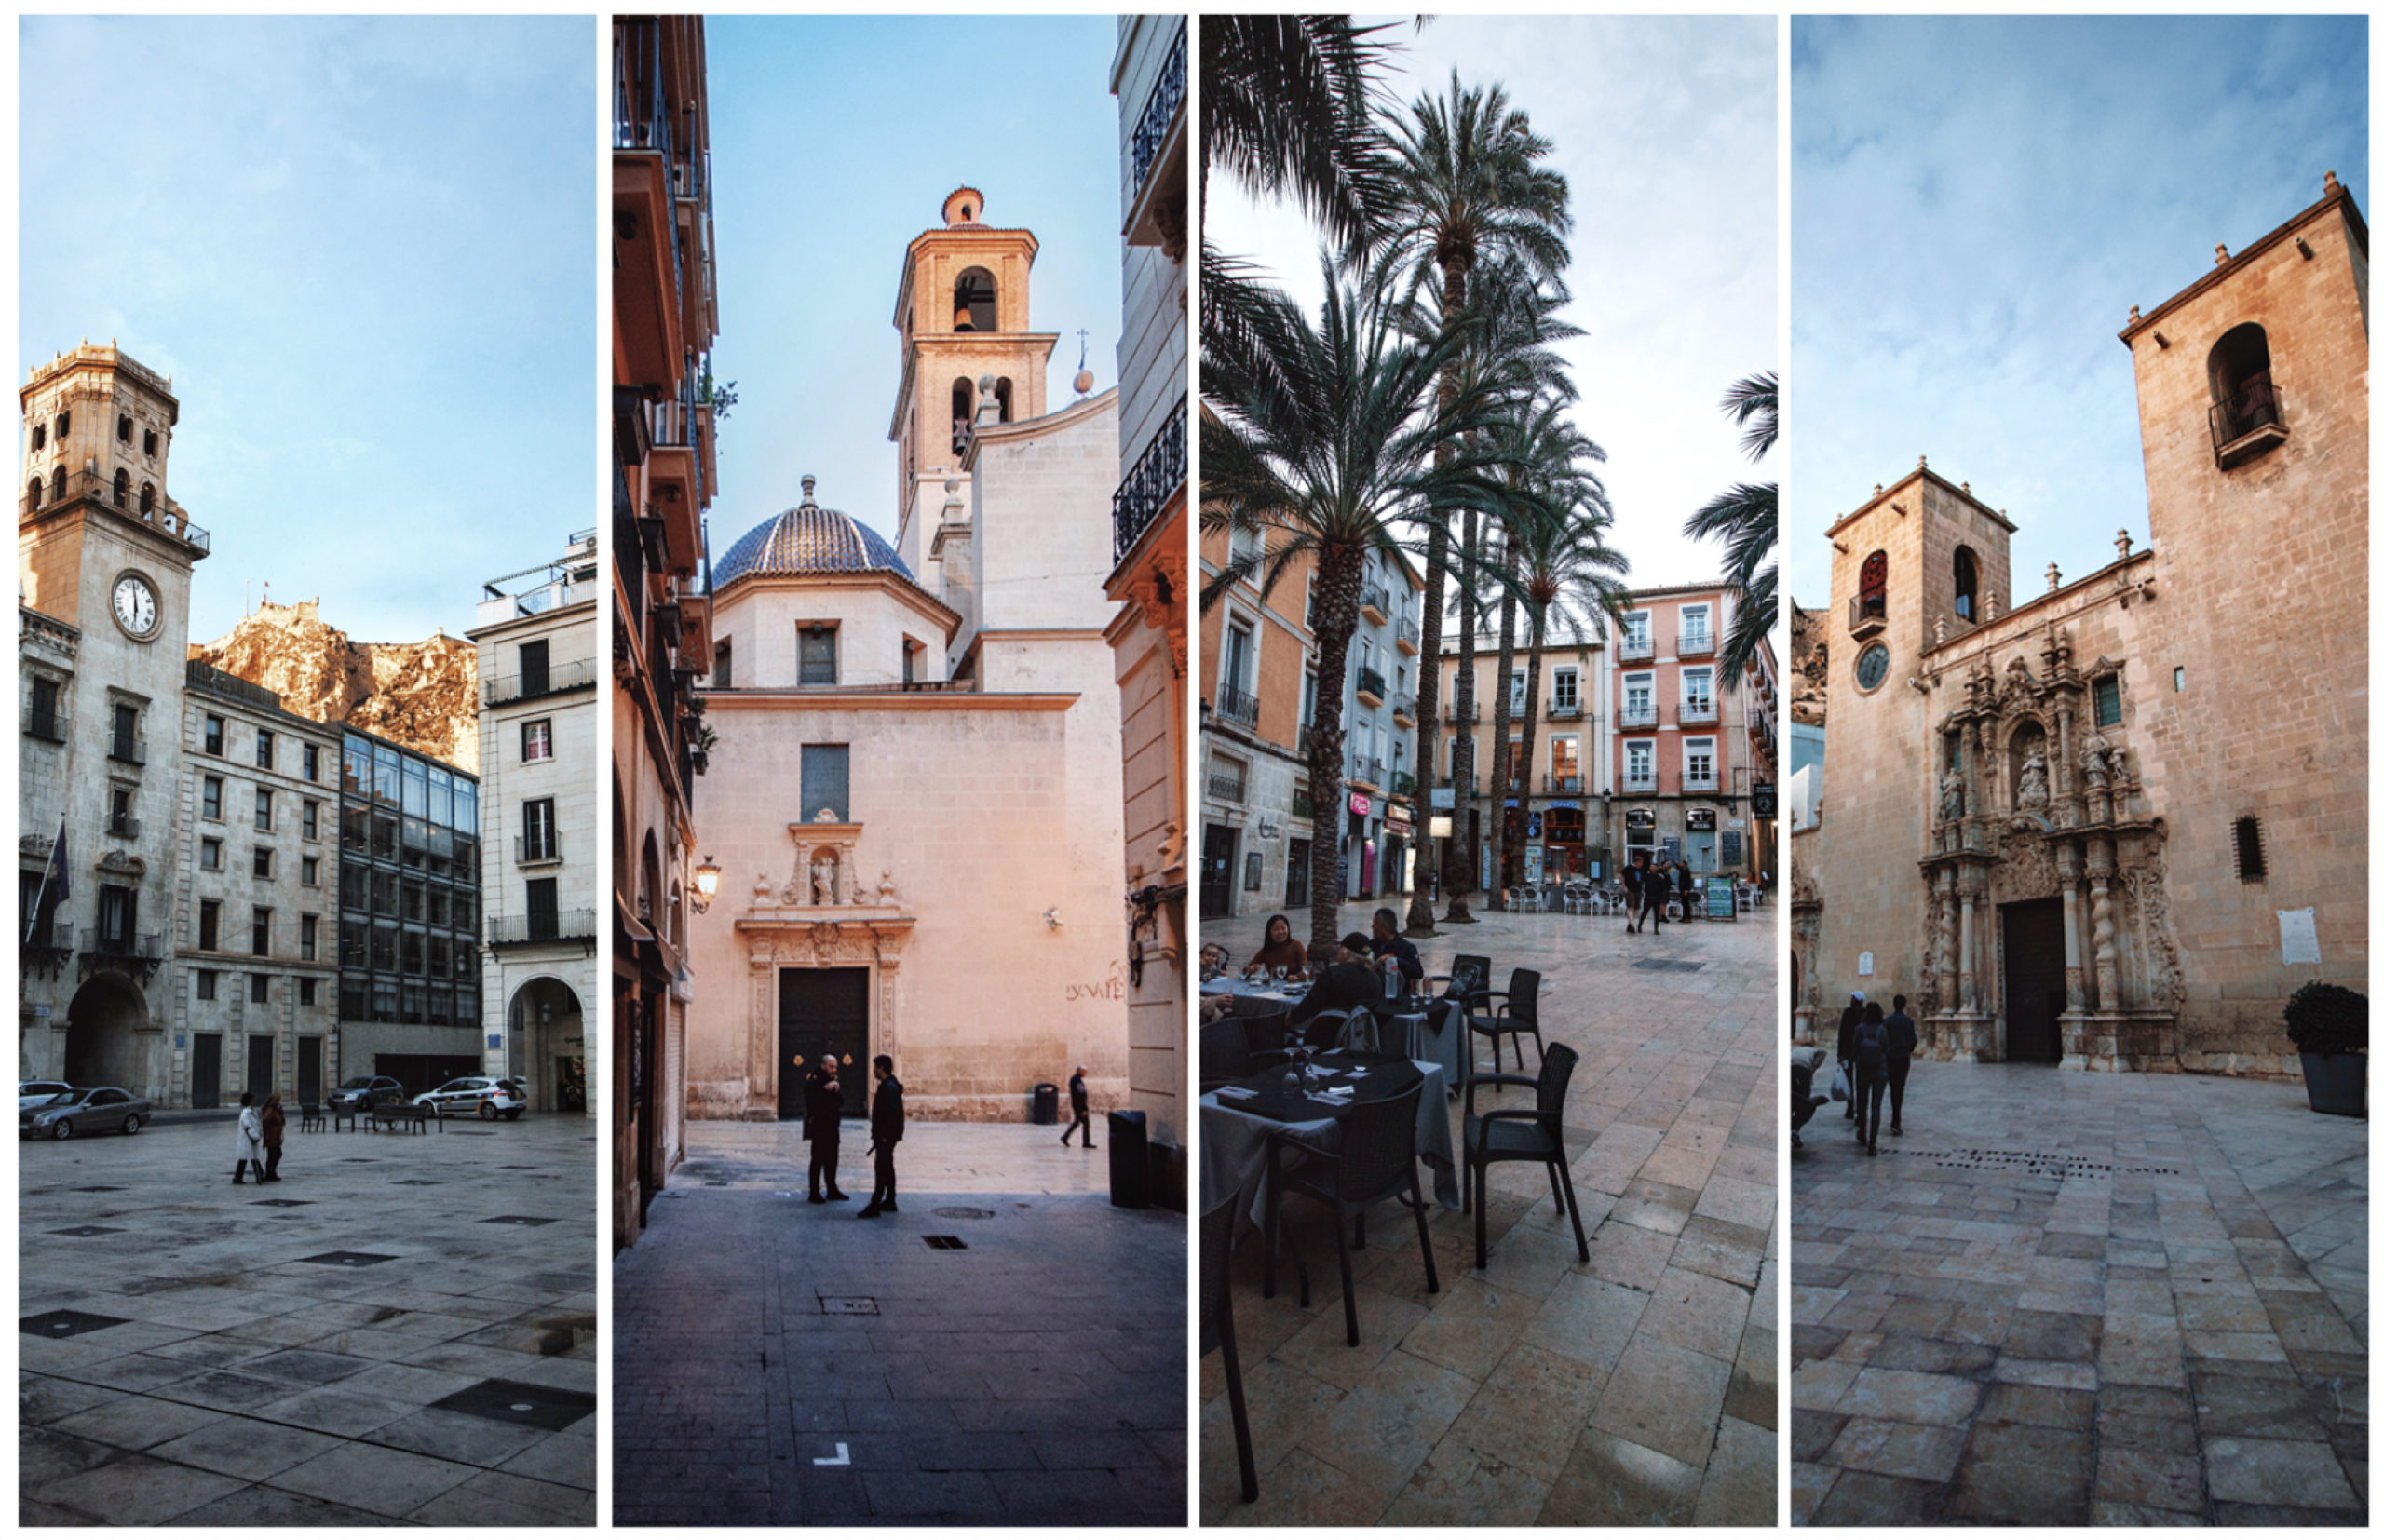 El Ayuntamiento, la Concatedral de San Nicolás de Bari, la Plaza de la Santísima Faz y la Basílica de Santa María son de los imperdibles de lo que hay que ver en Alicante.